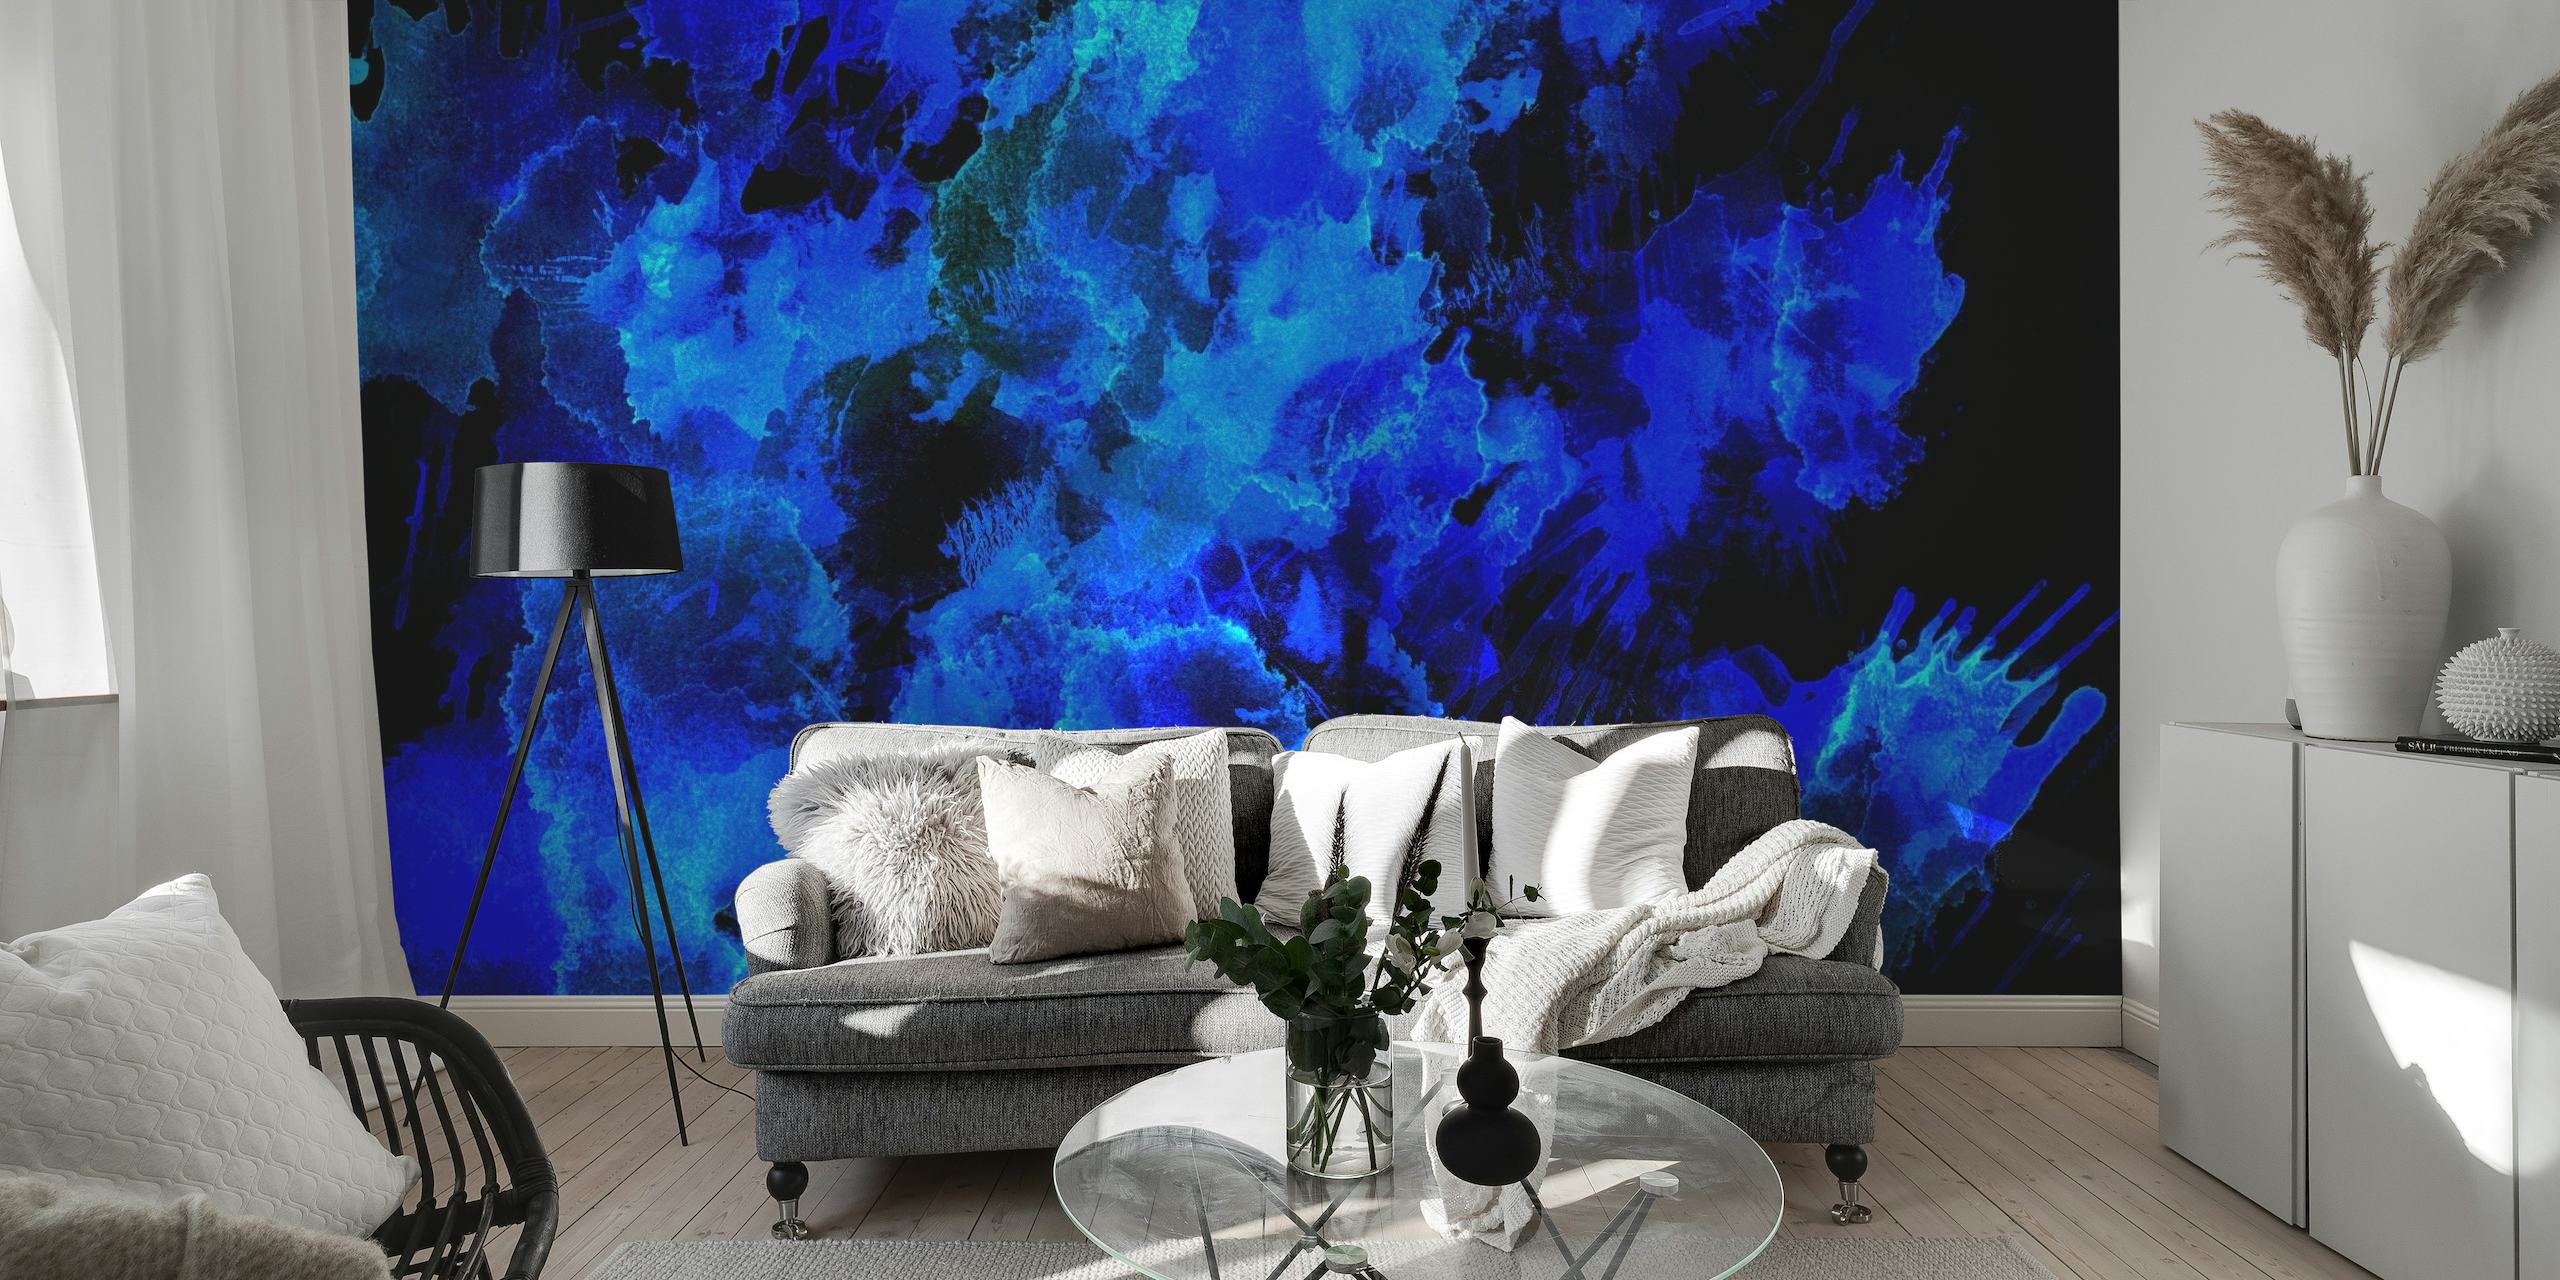 Abstraktes Wandbild in Blautönen, das an die Schönheit des Nachthimmels oder der Meerestiefen erinnert